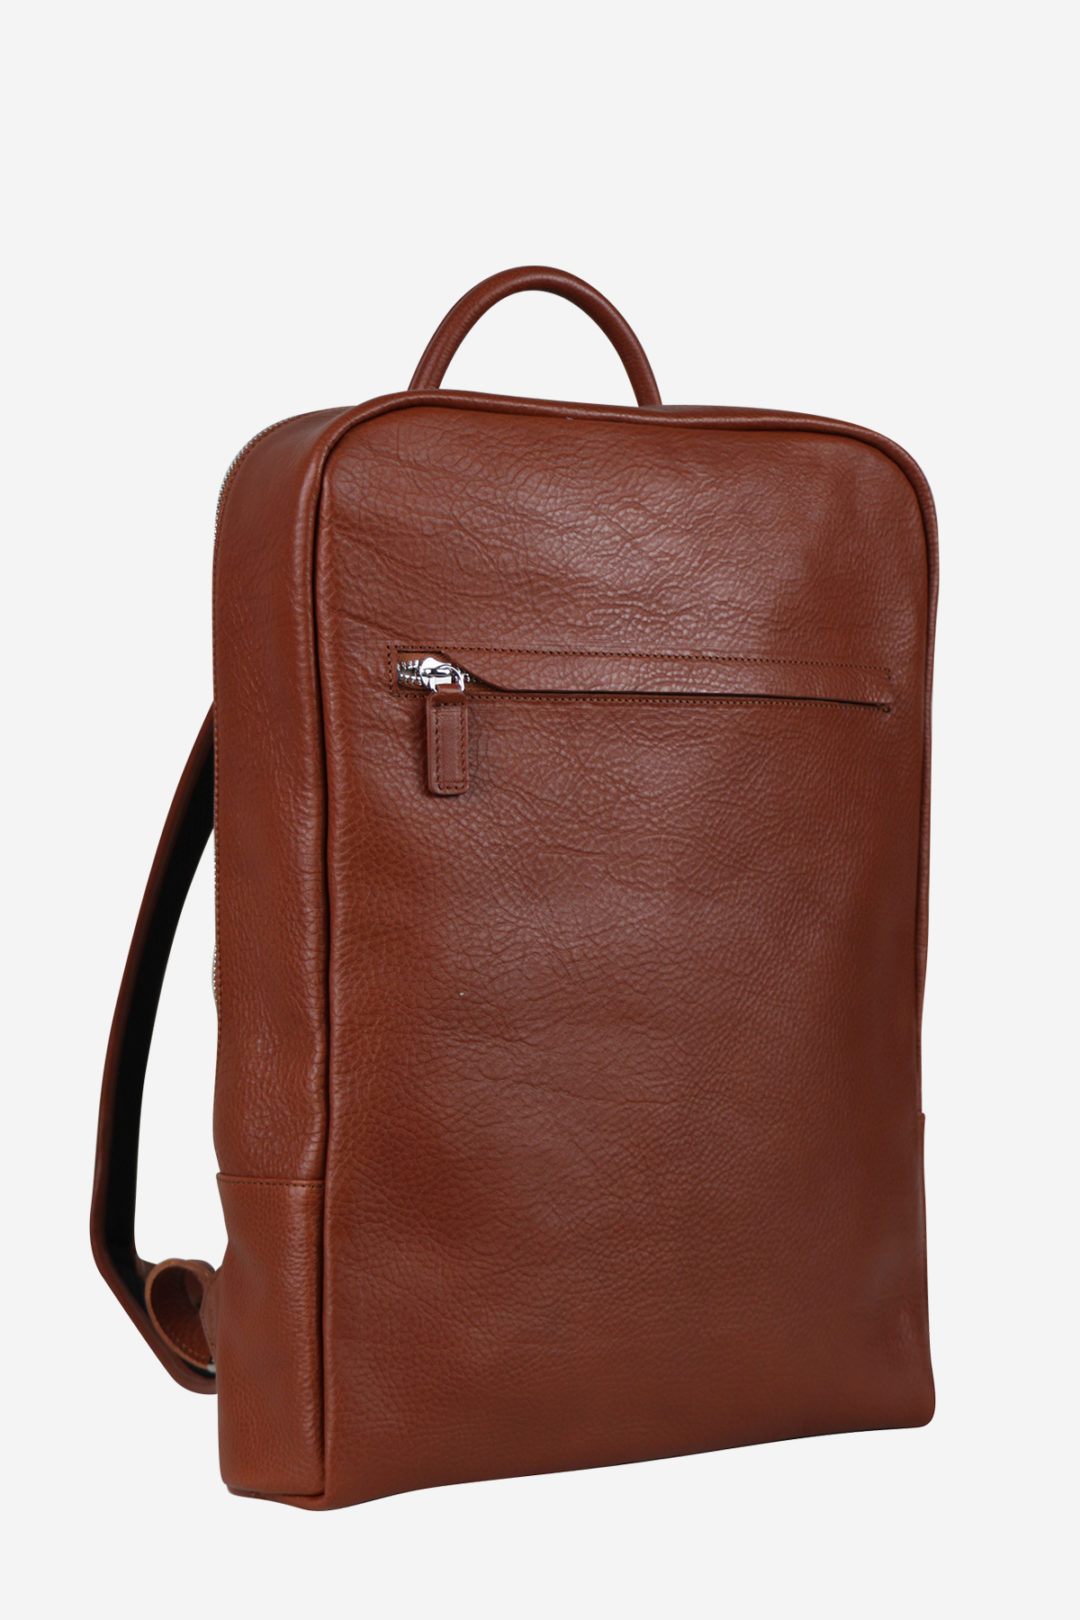 Londo Top Grain Leather Travel 16” Laptop Bag - Briefcase Satchel Port –  MegaGear Store